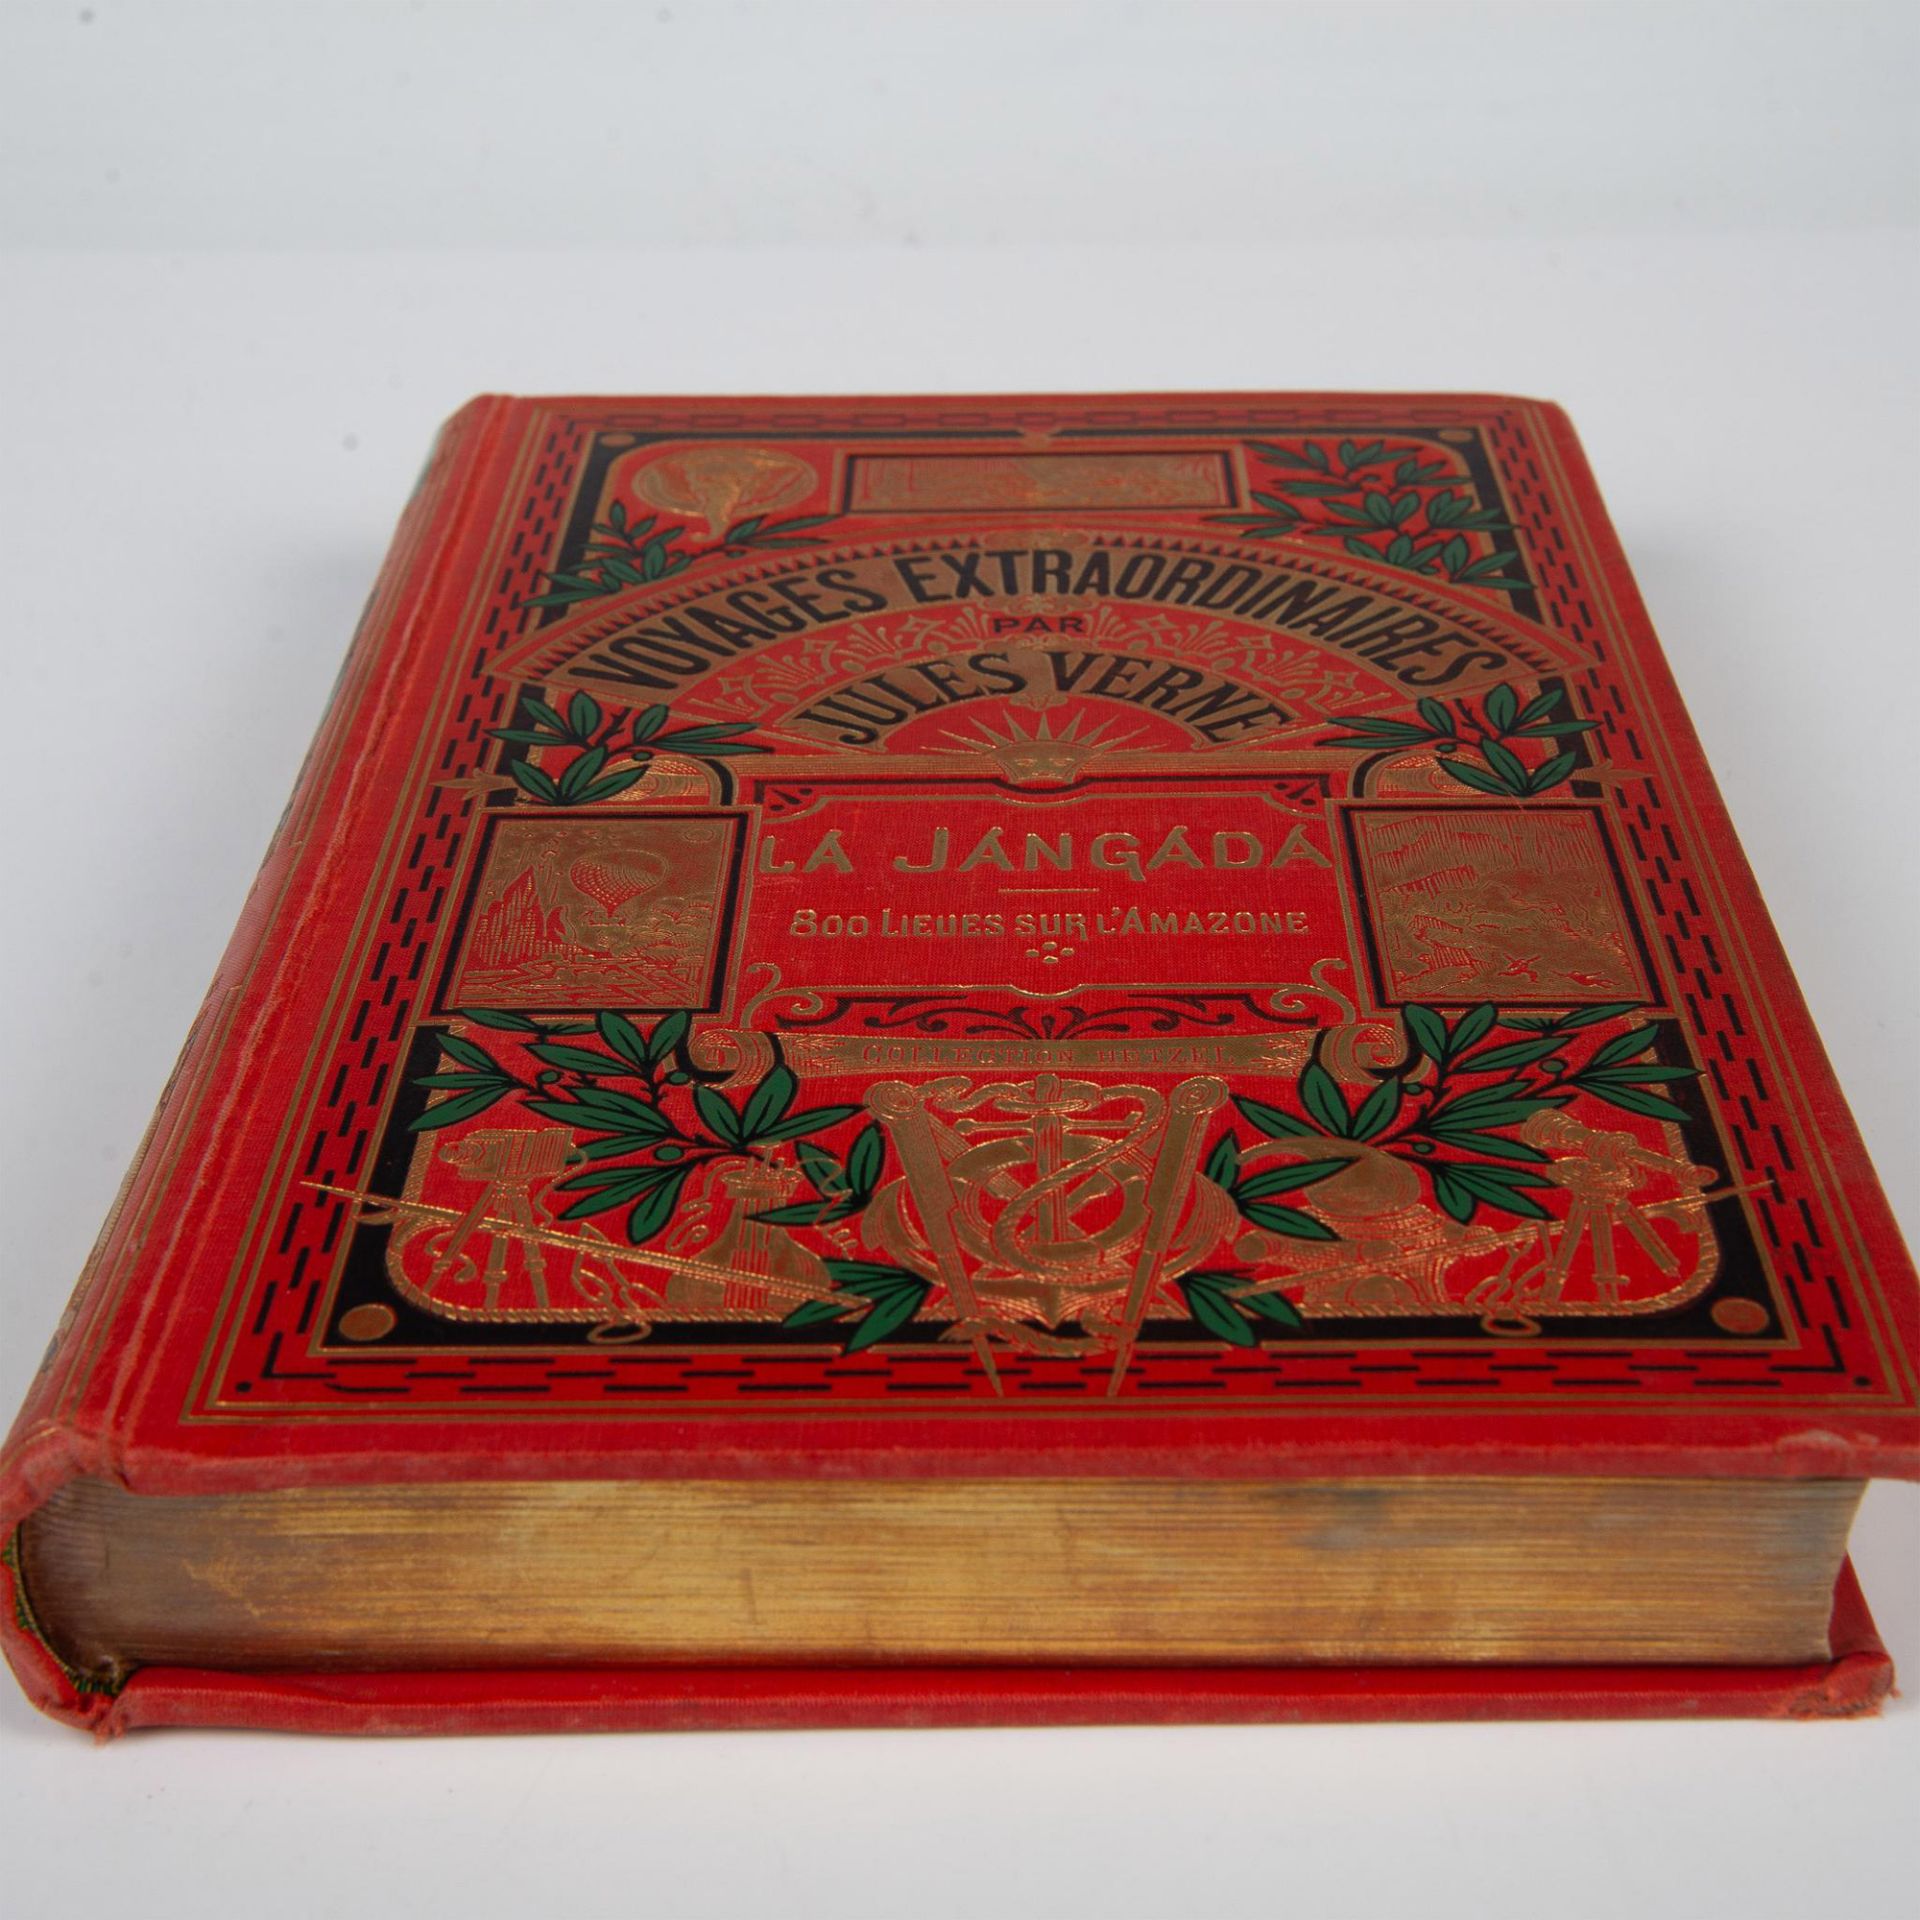 Jules Verne, La Jangada, Un Elephant, Hachette & Cie - Image 3 of 6